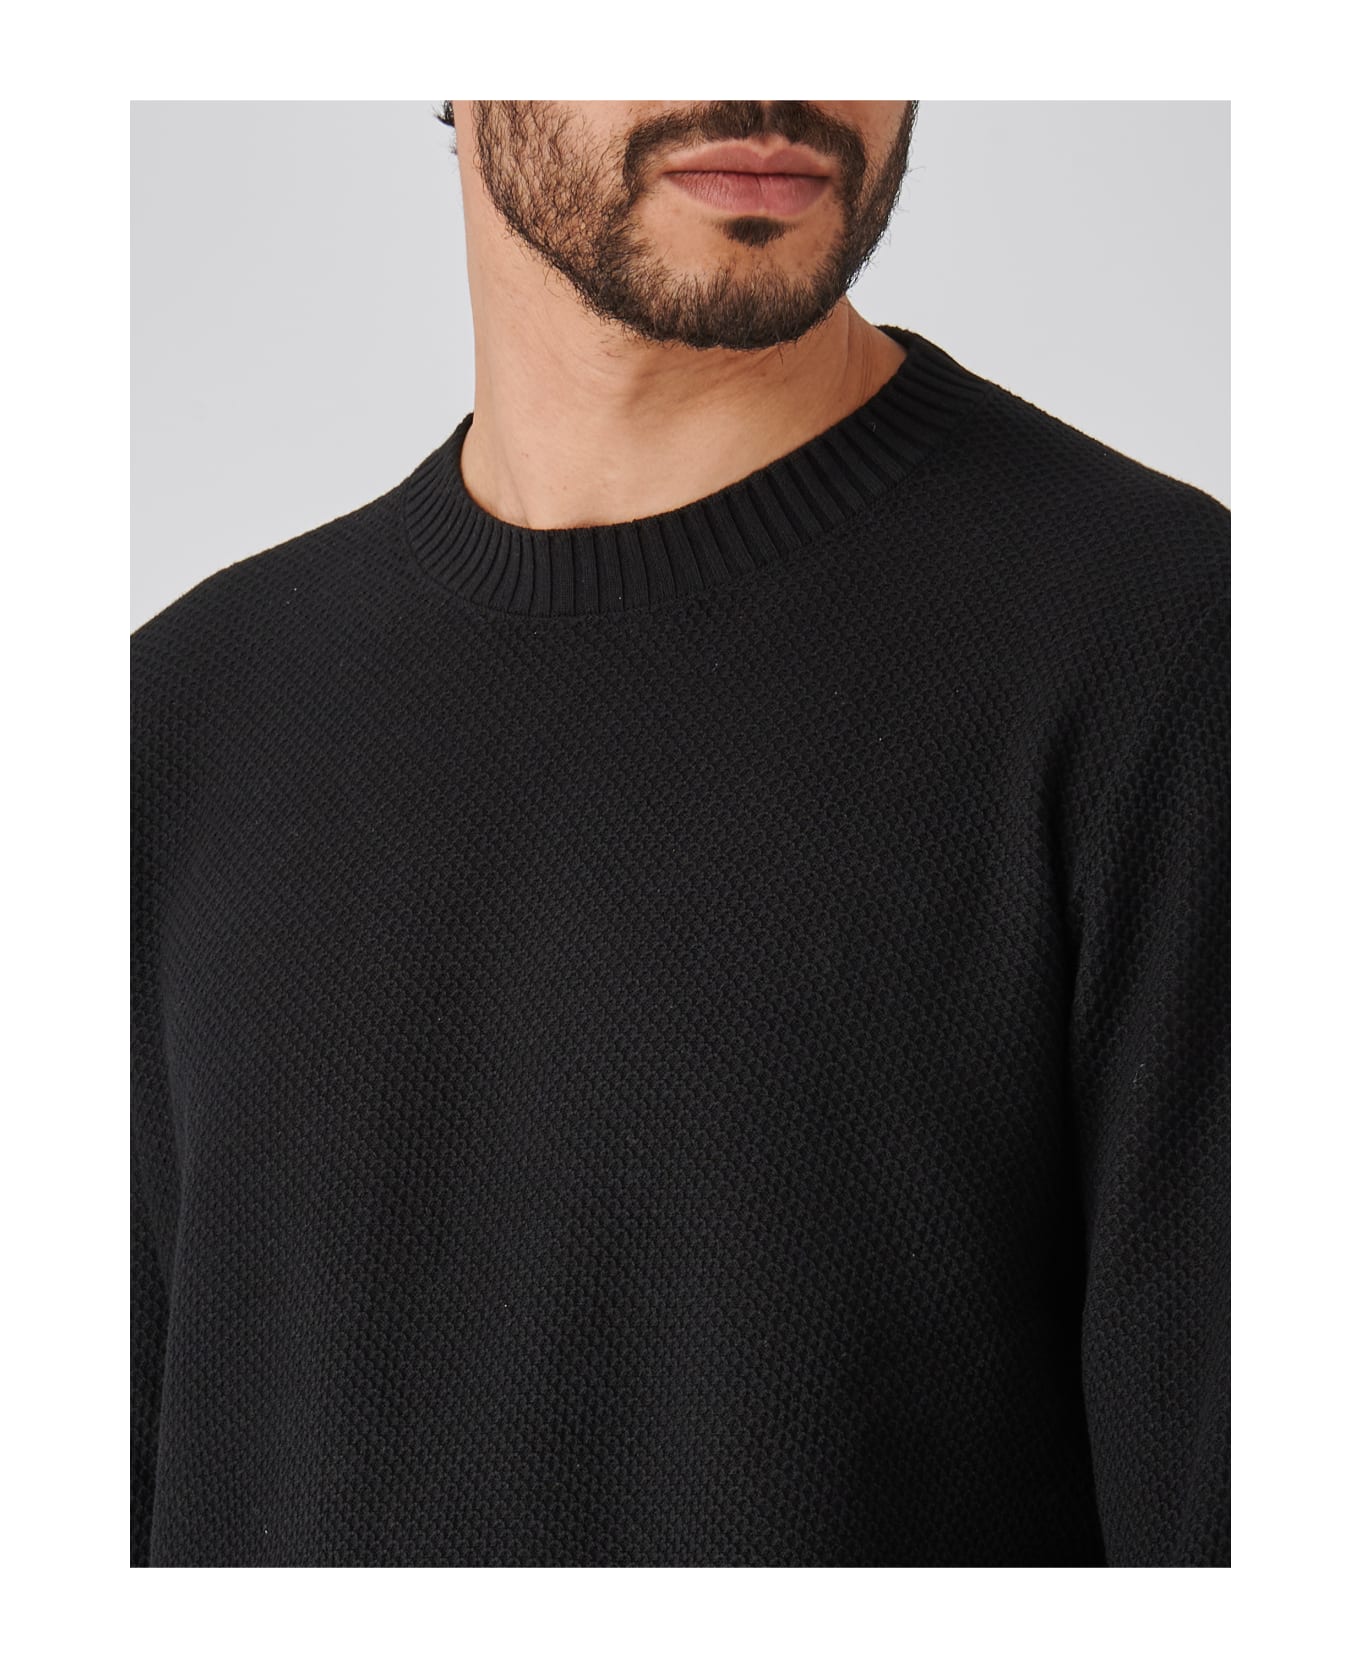 Gran Sasso Paricollo M/l Sweater - NERO ニットウェア